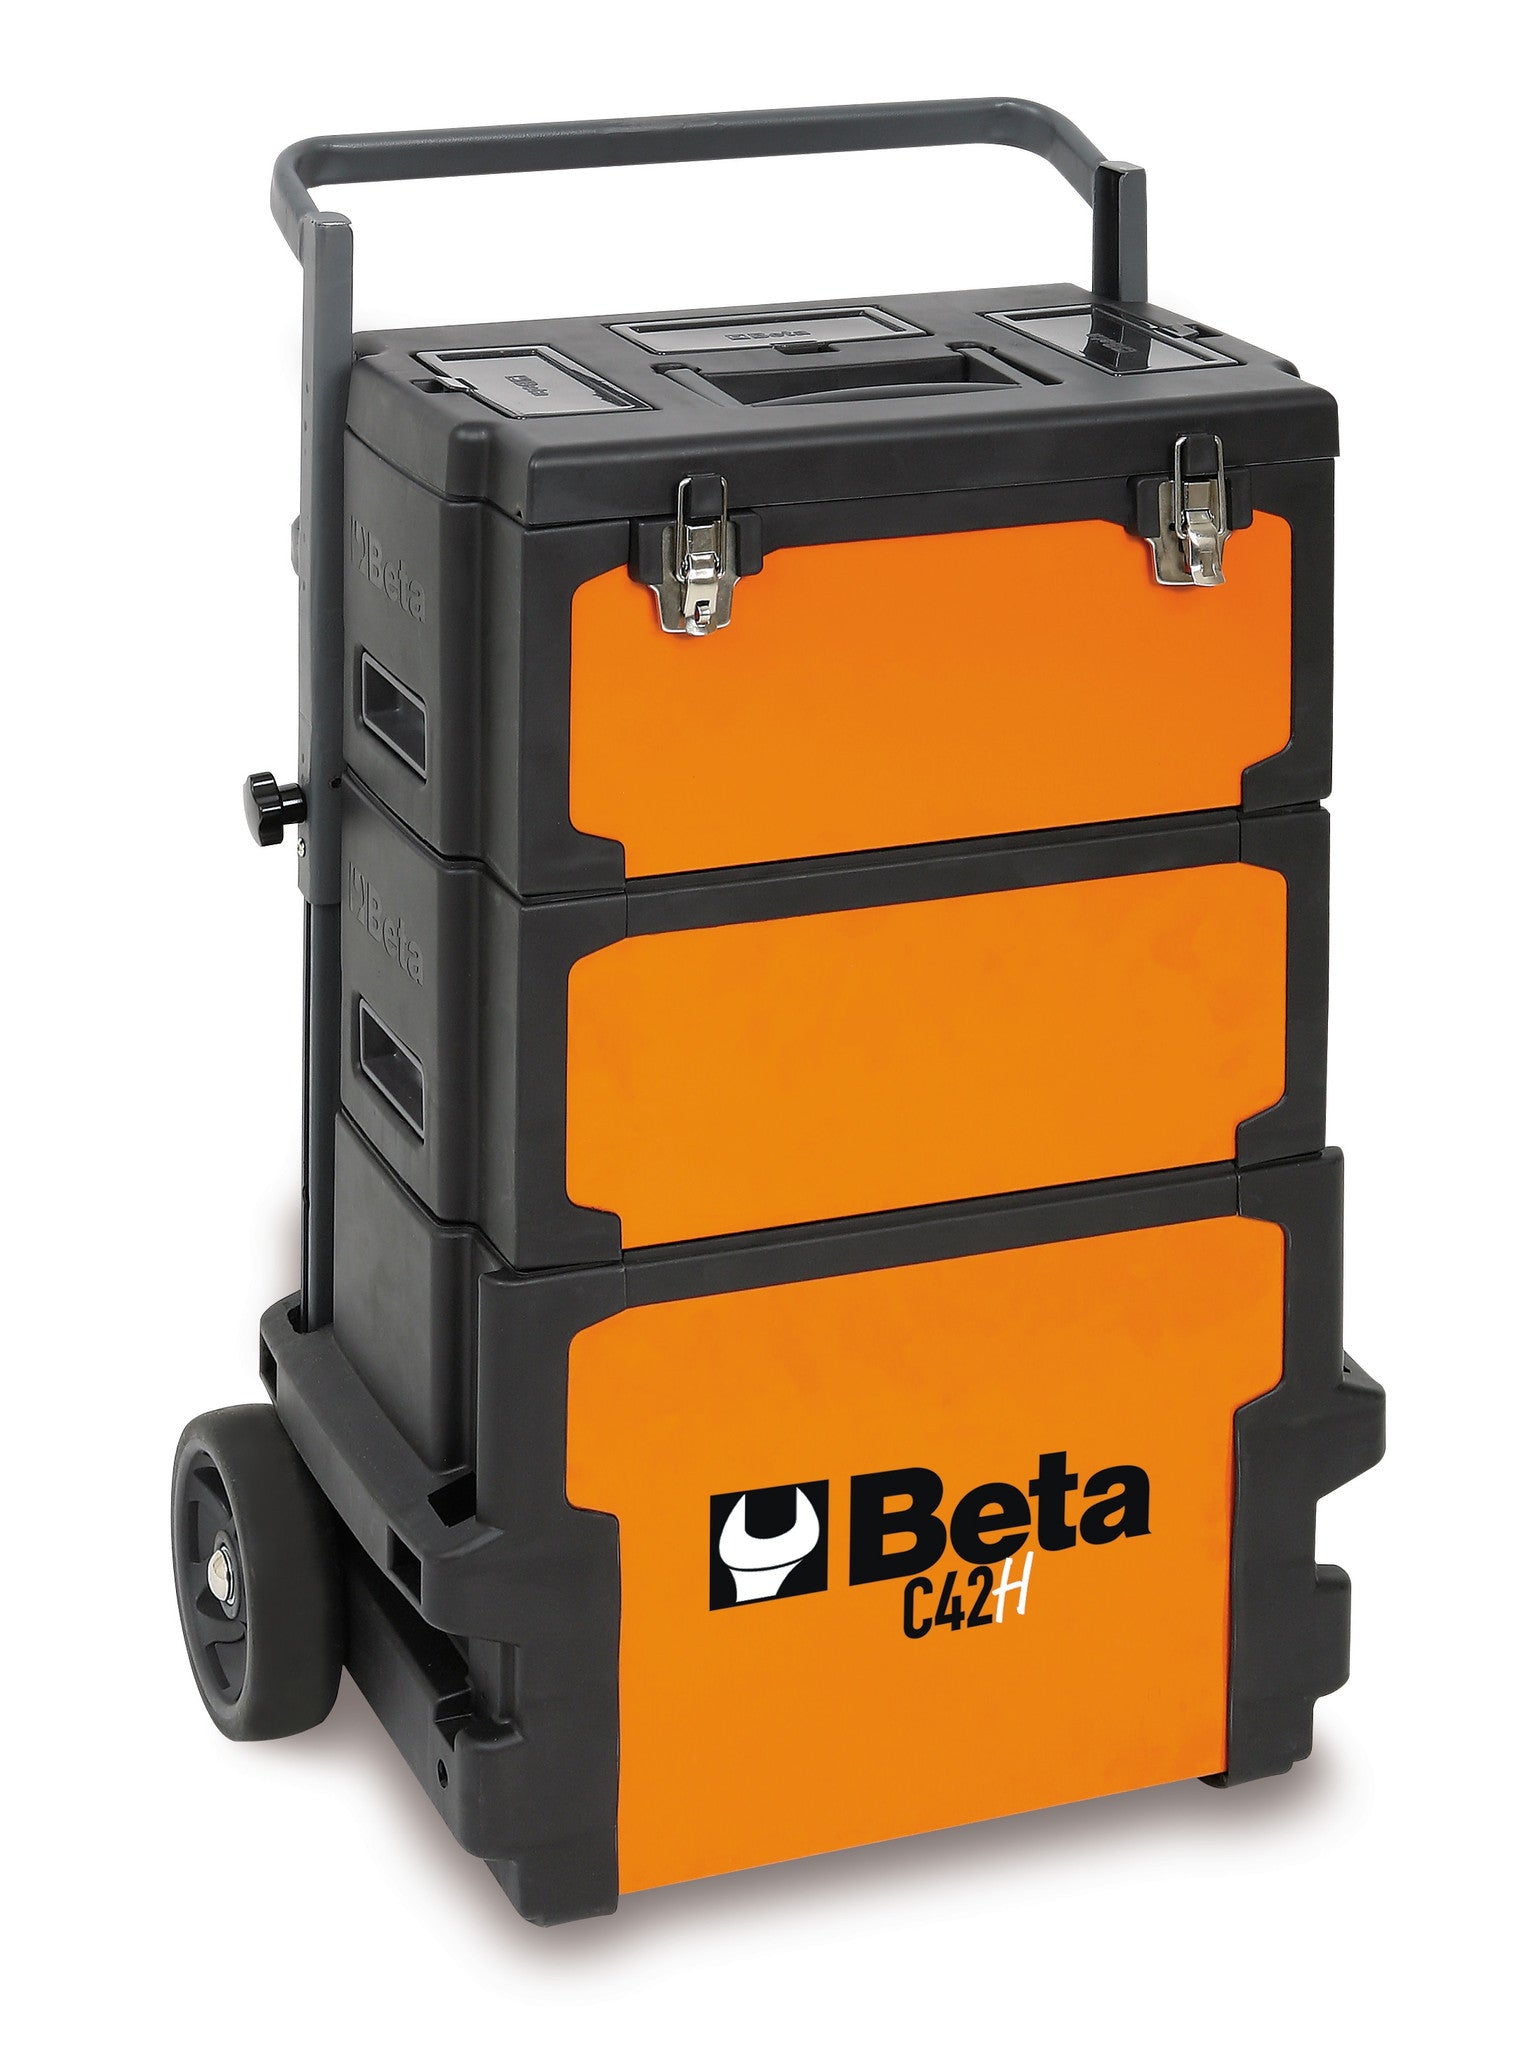 Trolley Beta C42H